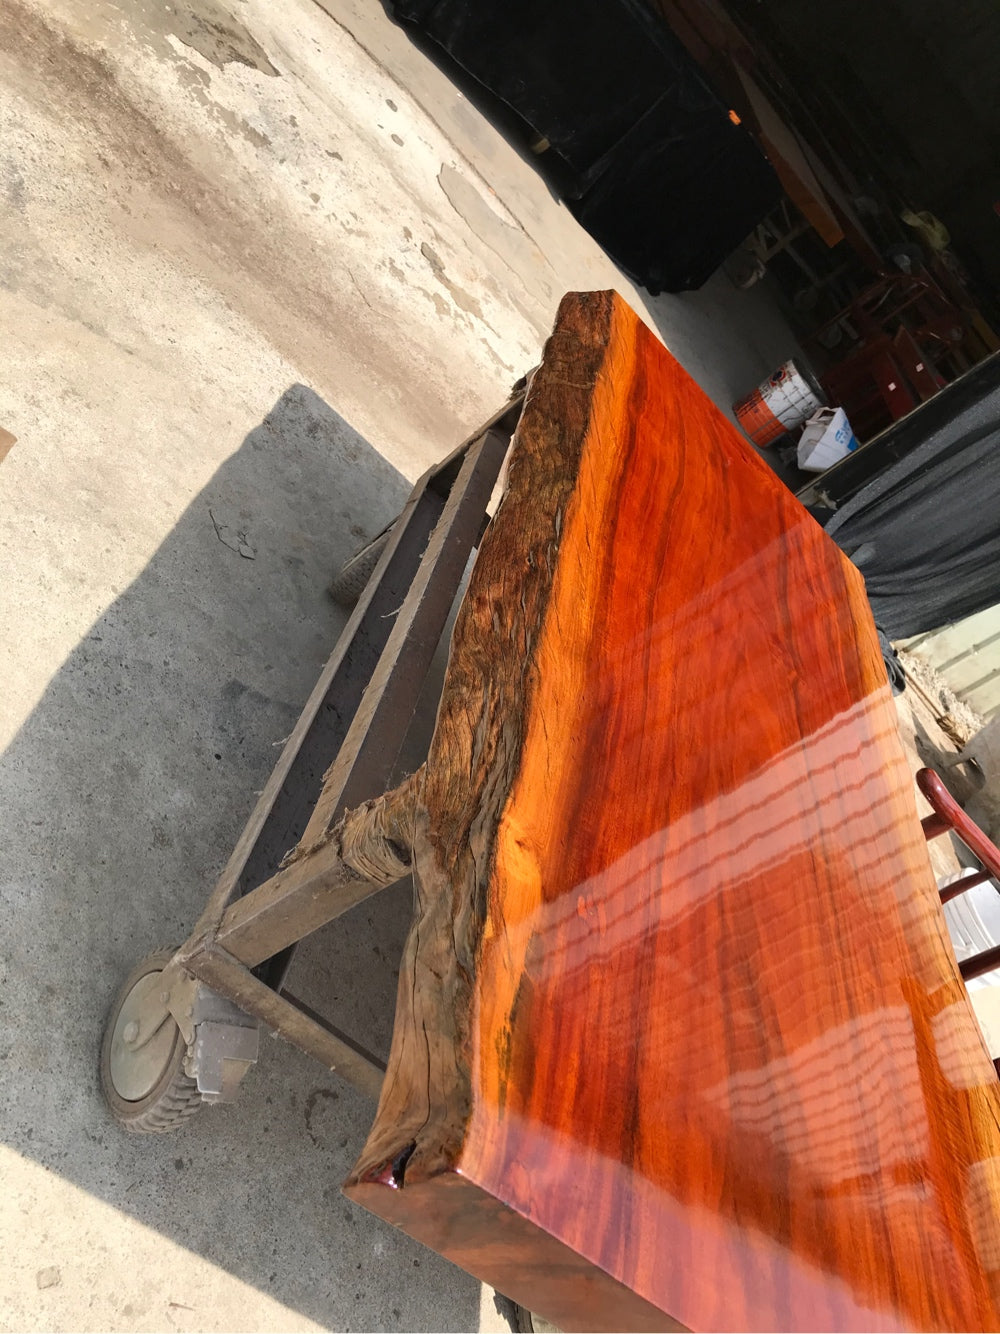 テーブルトップ用木製スラブ英国、ローデシアンコーパル木製スラブダイニングテーブル、木製スラブテーブルトップ